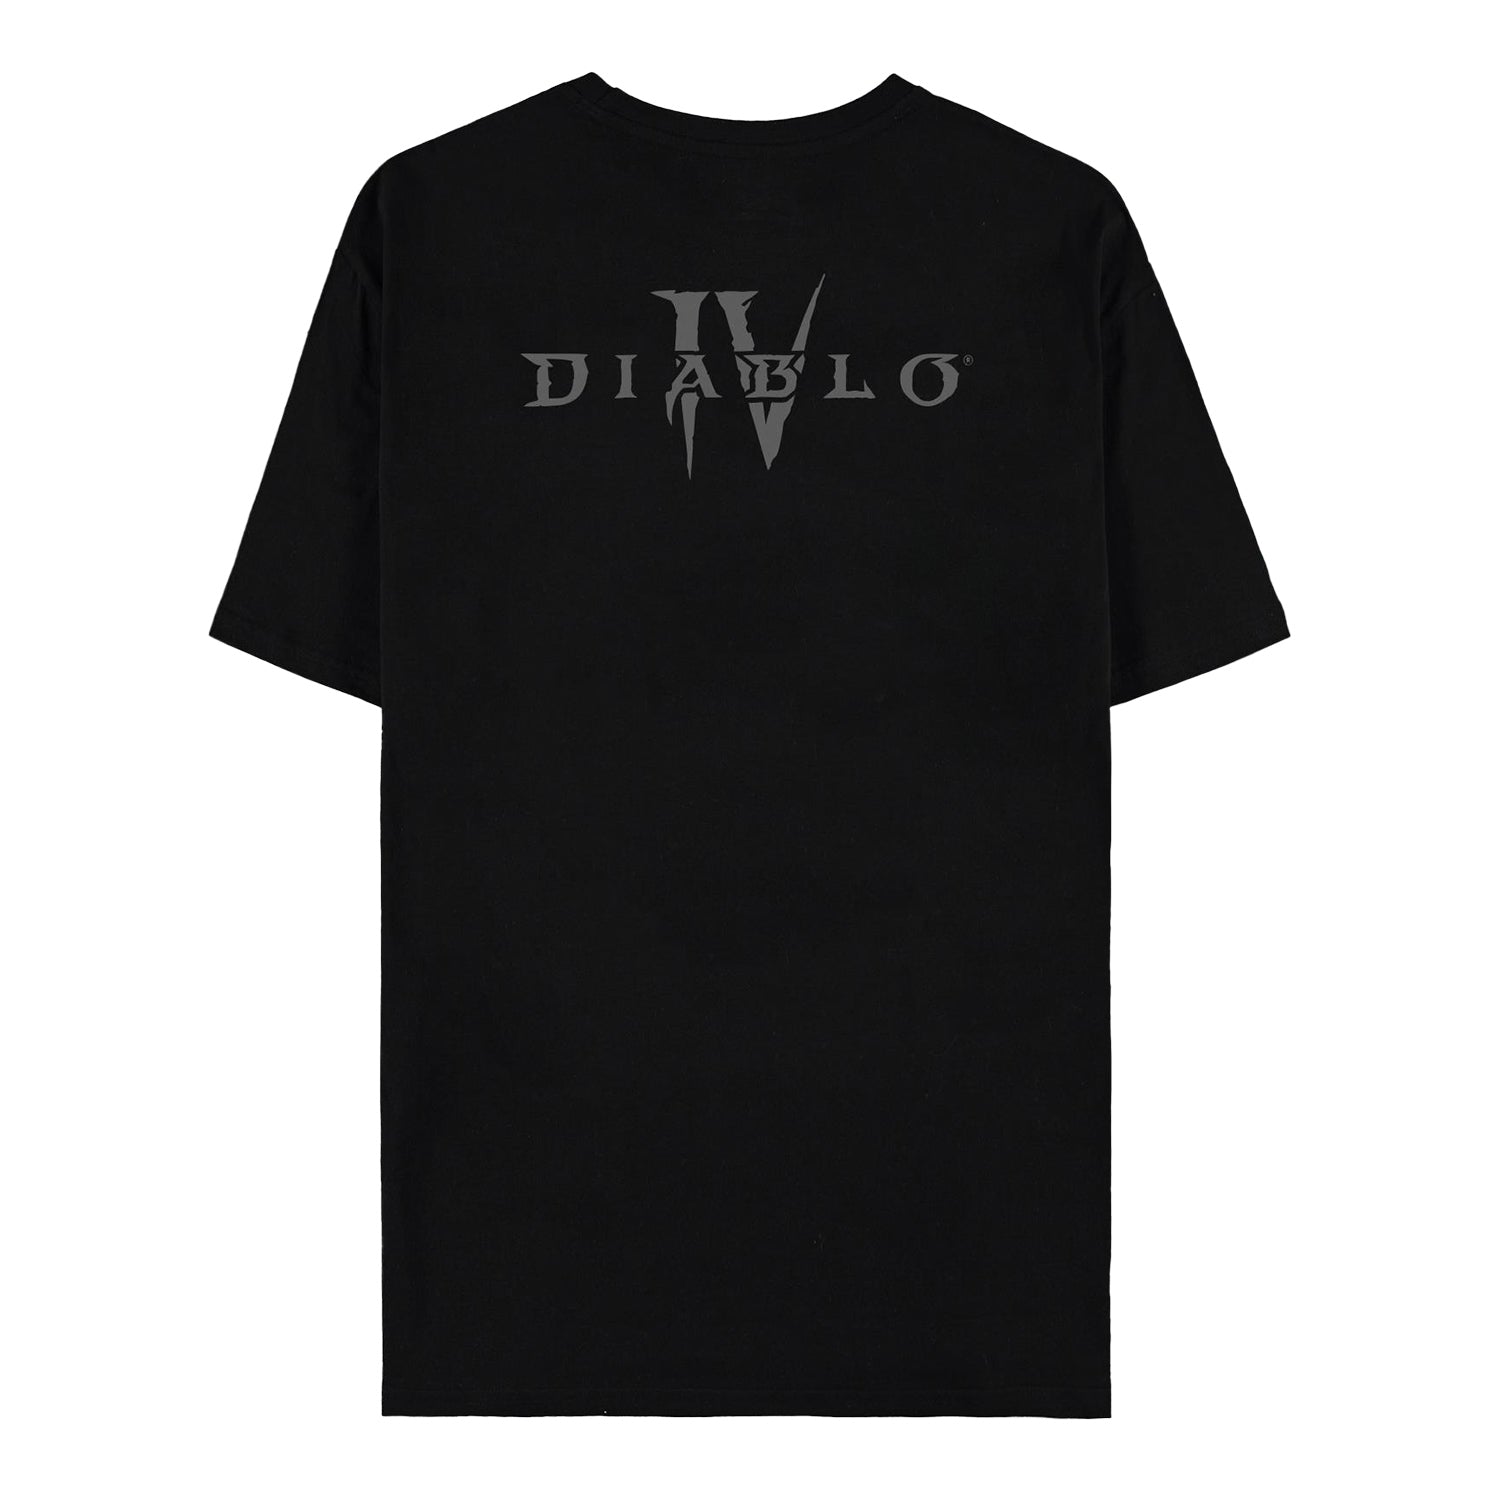 Diablo IV All Seeing Black T-Shirt - Back View